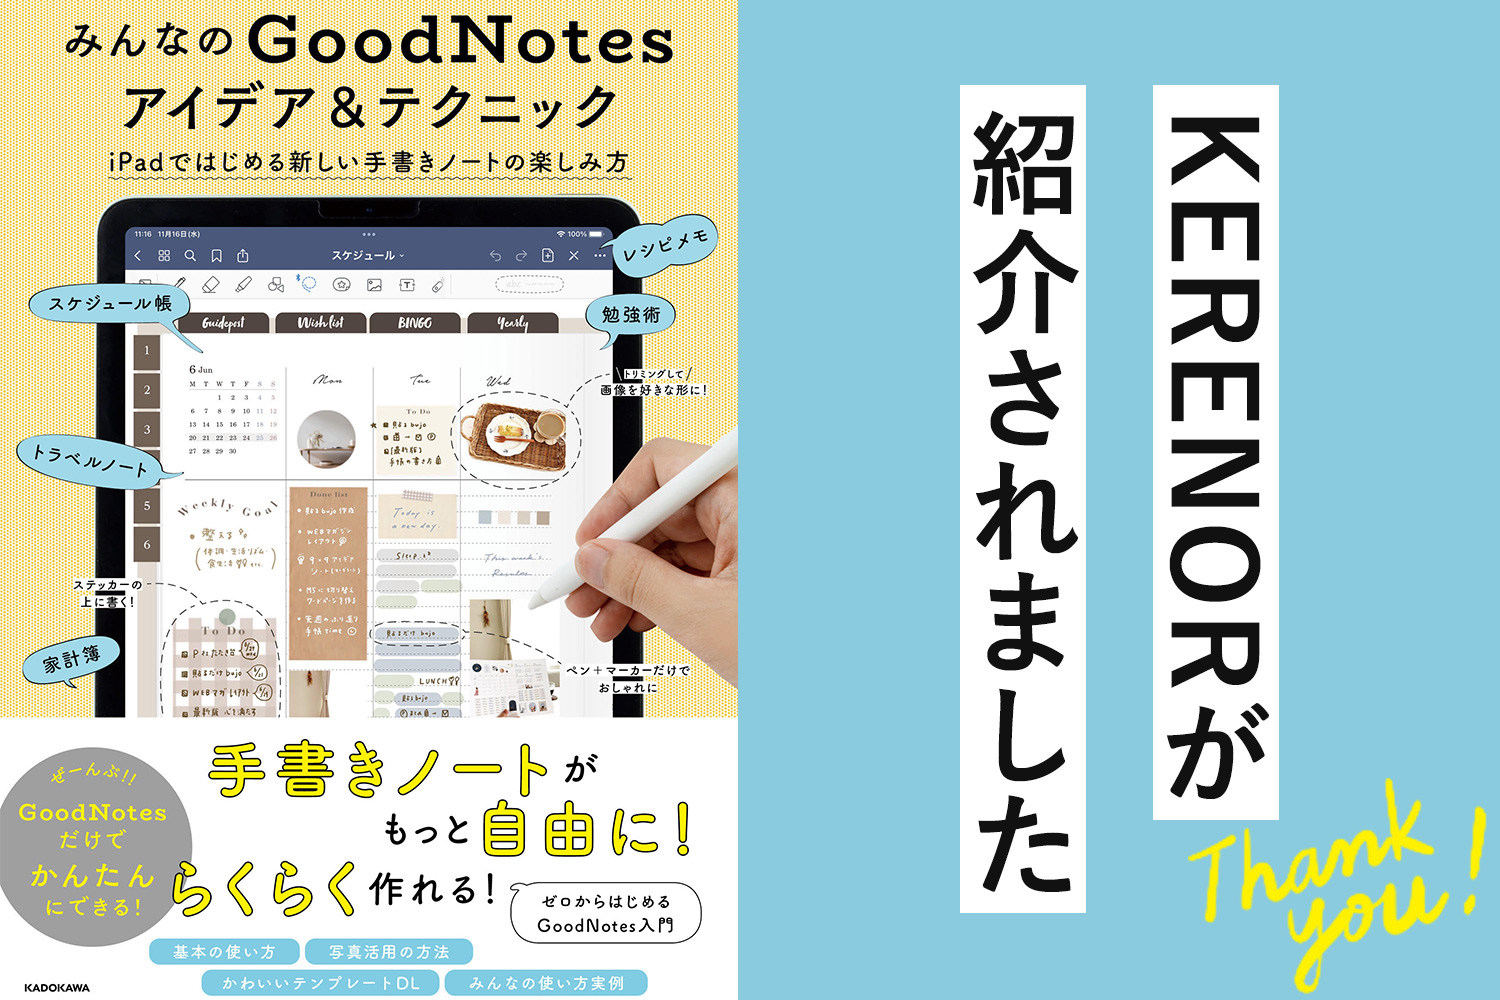 本「みんなのGoodNotesアイデア&テクニック iPadではじめる新しい手書きノートの楽しみ方」でKERENOR（ケレンオール）が紹介されました！